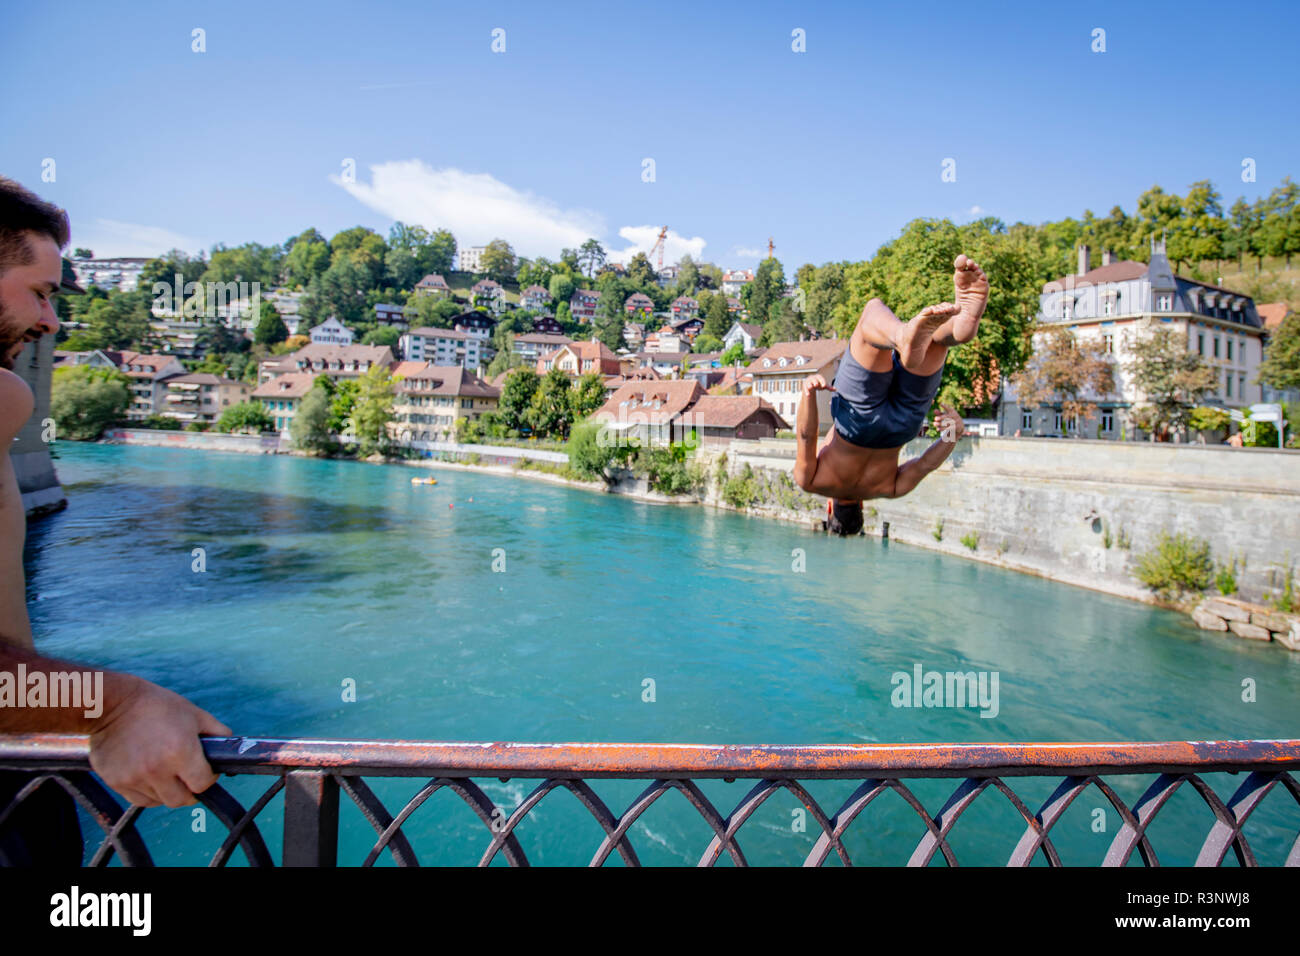 Un hombre salta en un smersault al revés del Untertor Brucke en Berna. El río Aare flota a través de la capital suiza Berna, y tan pronto como la temperatura se arrastra por encima de los 10 grados, se ve a la gente saltando en el agua para nadar. Muchos usan el río regularmente para nadar para almorzar o para ir y salir del trabajo. Algunos incluso nadan durante todo el año. Foto de stock